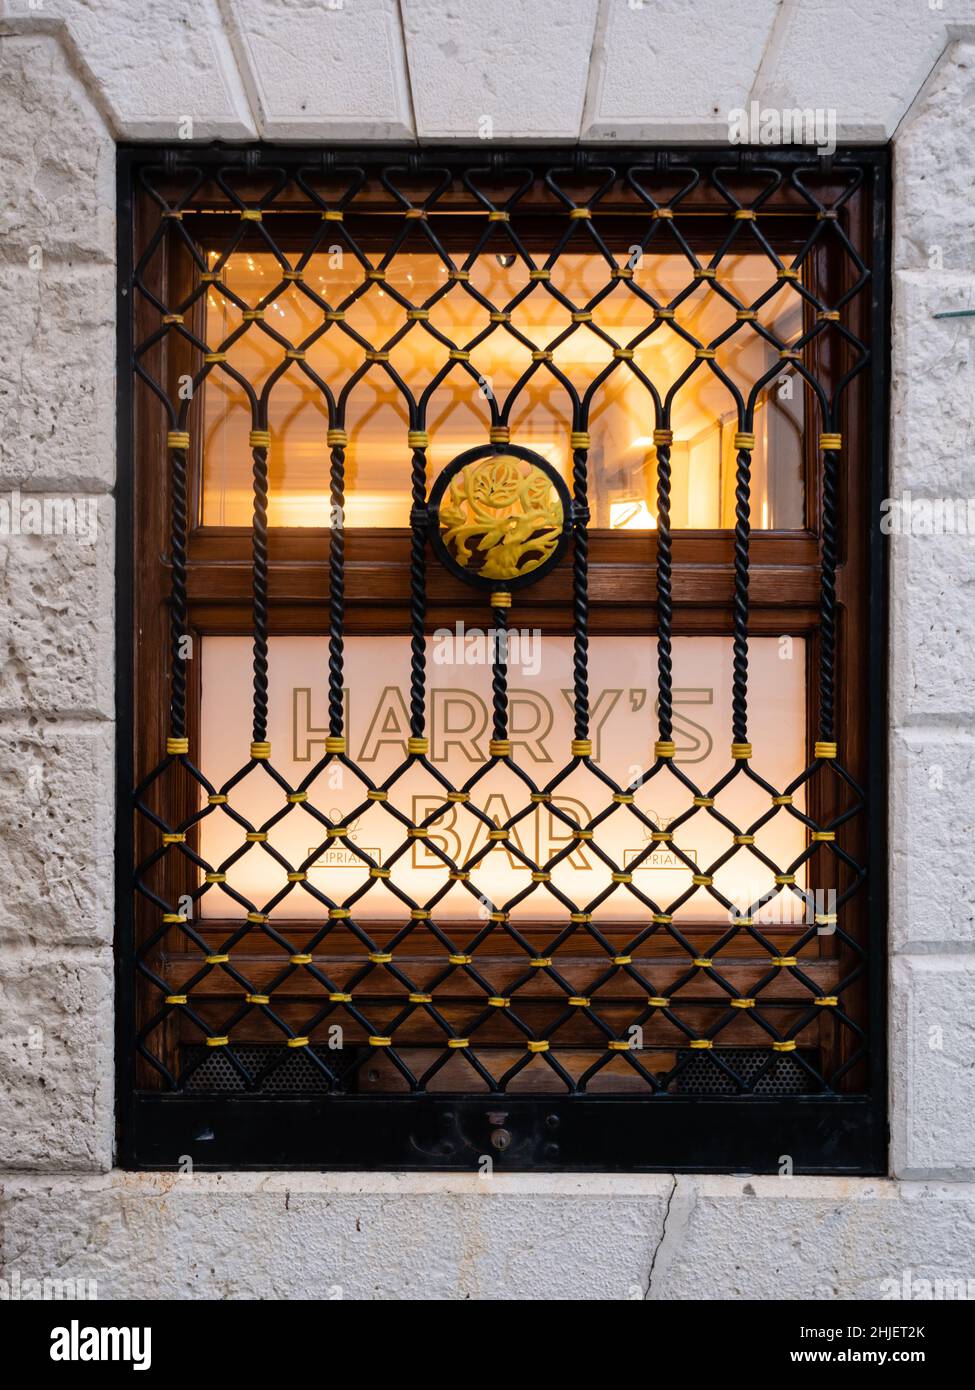 Venice, Italy - January 4 2022: Harry's Bar Sign in Venice, Italy Illuminated Window with Logo Stock Photo